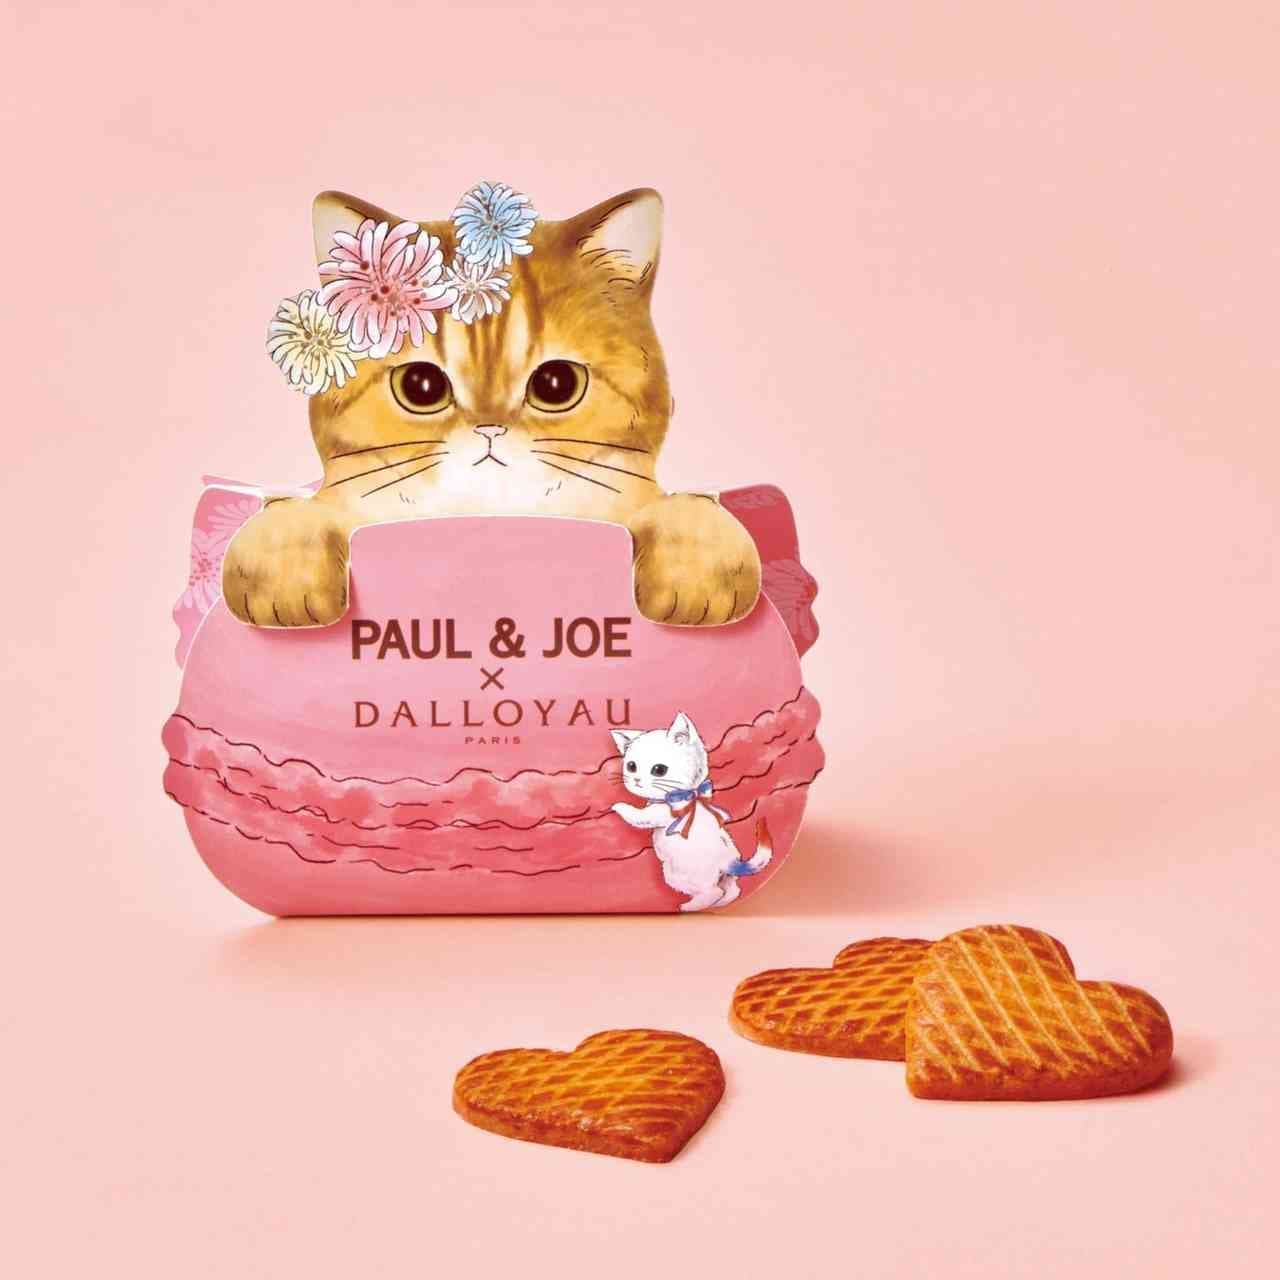 PAUL & JOE x Dalloyo cat design sweets